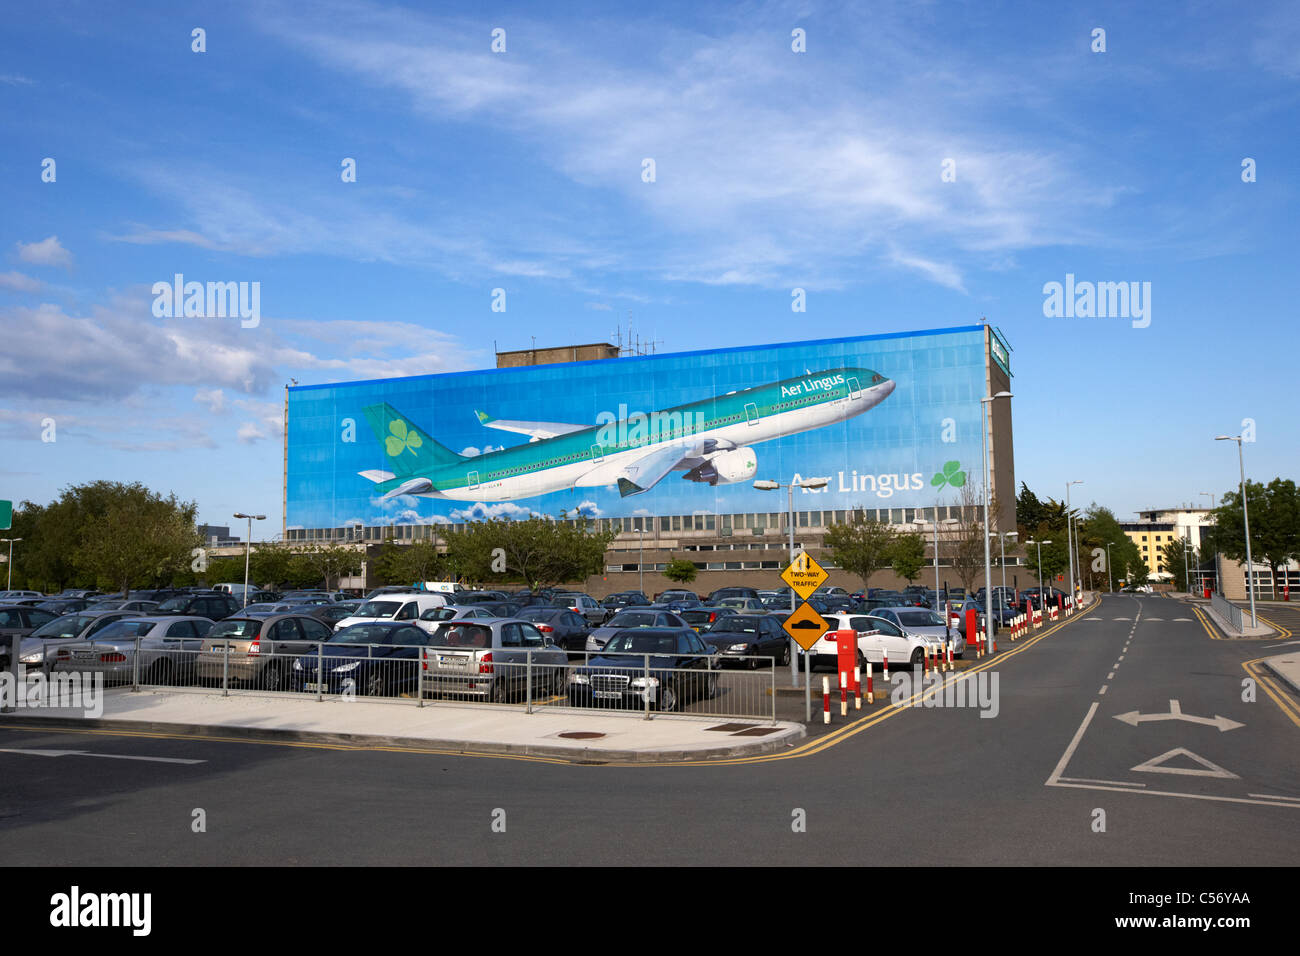 Parking et Aer lingus bâtiment du siège, siège social de l'aéroport de Dublin République d'irlande europe Banque D'Images